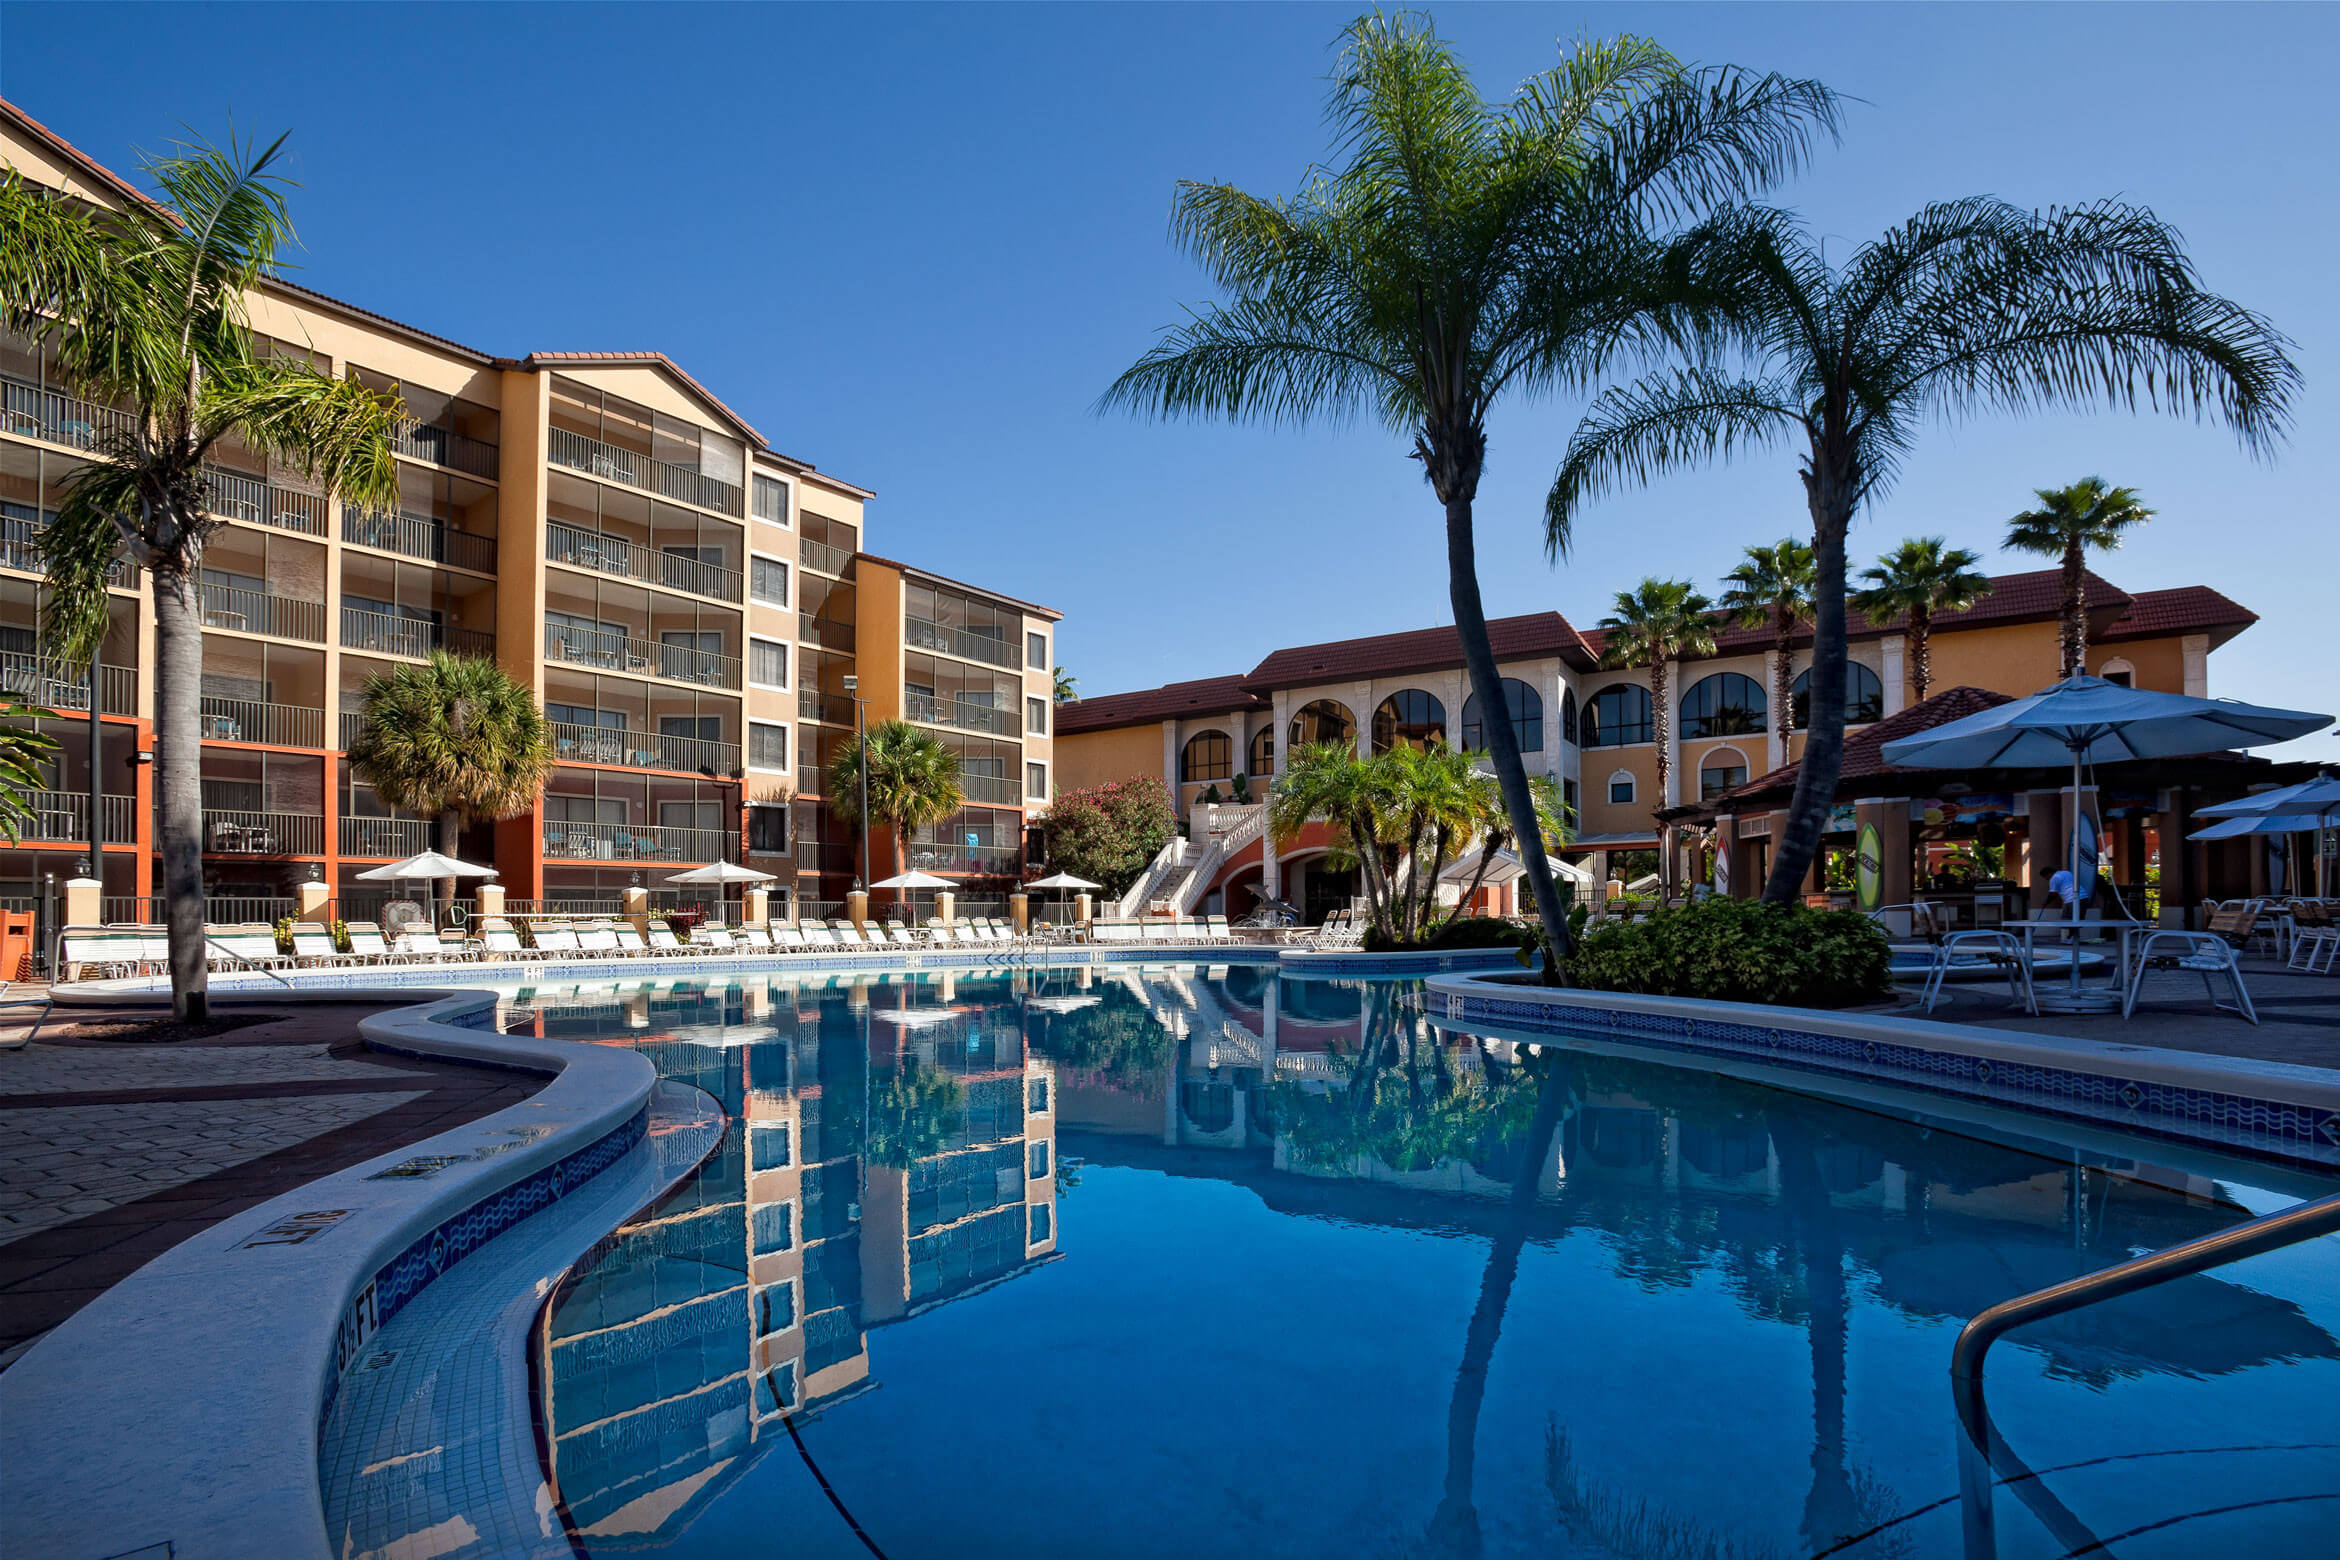 Outdoor Pool at Sunset | Westgate Lakes Resort & Spa | Orlando, FL | Westgate Resorts